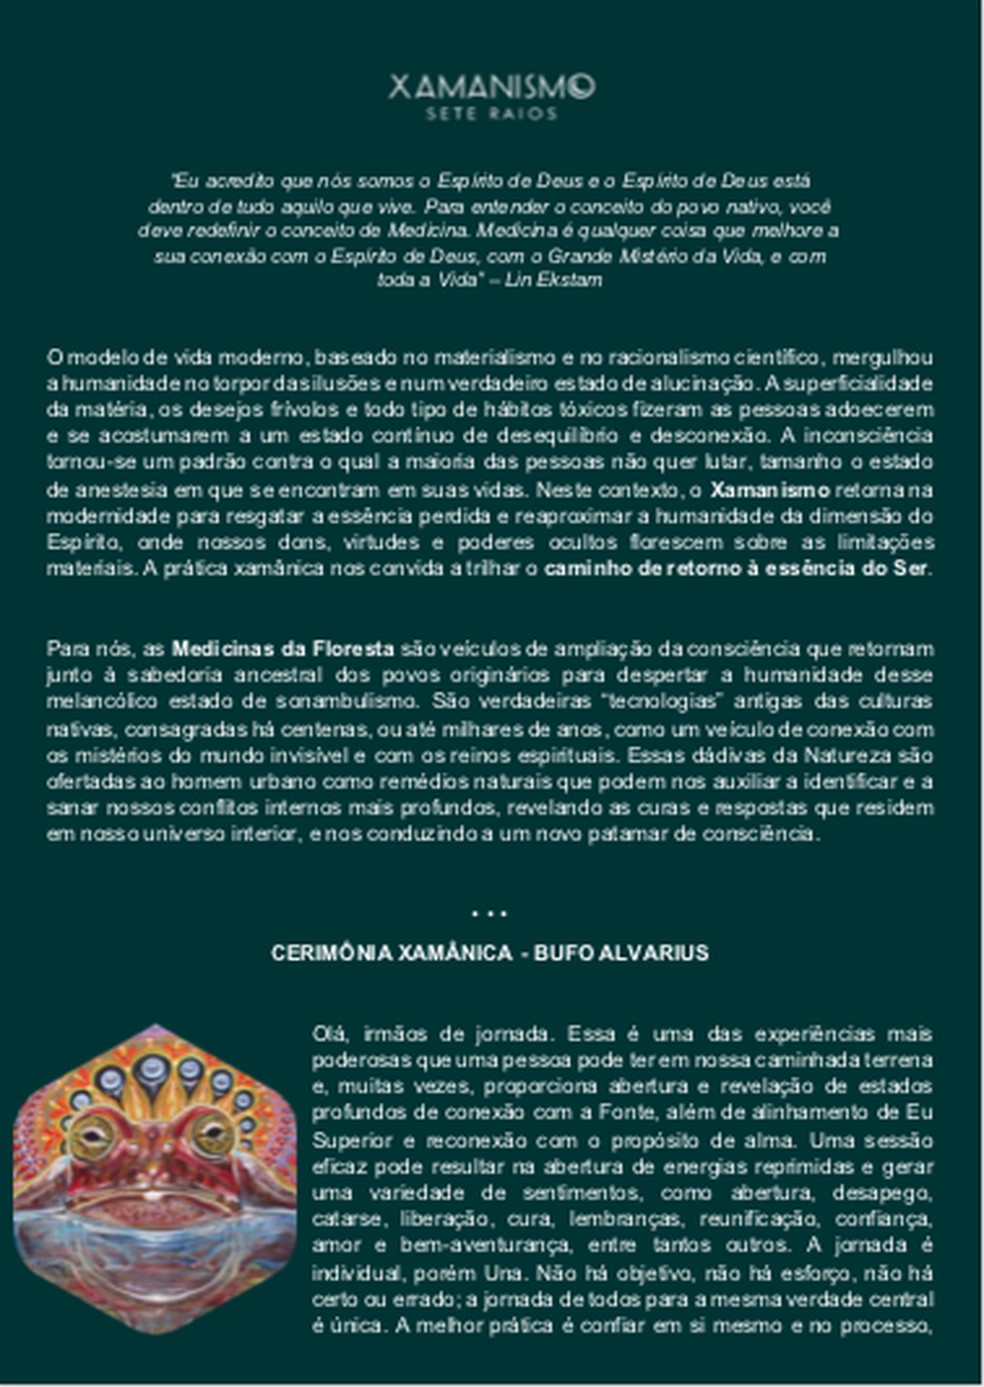 Material de divulgação do Xamanismo Sete Raios sobre o 'bufo' recebido por Gabriela e Franciele.   — Foto: Reprodução